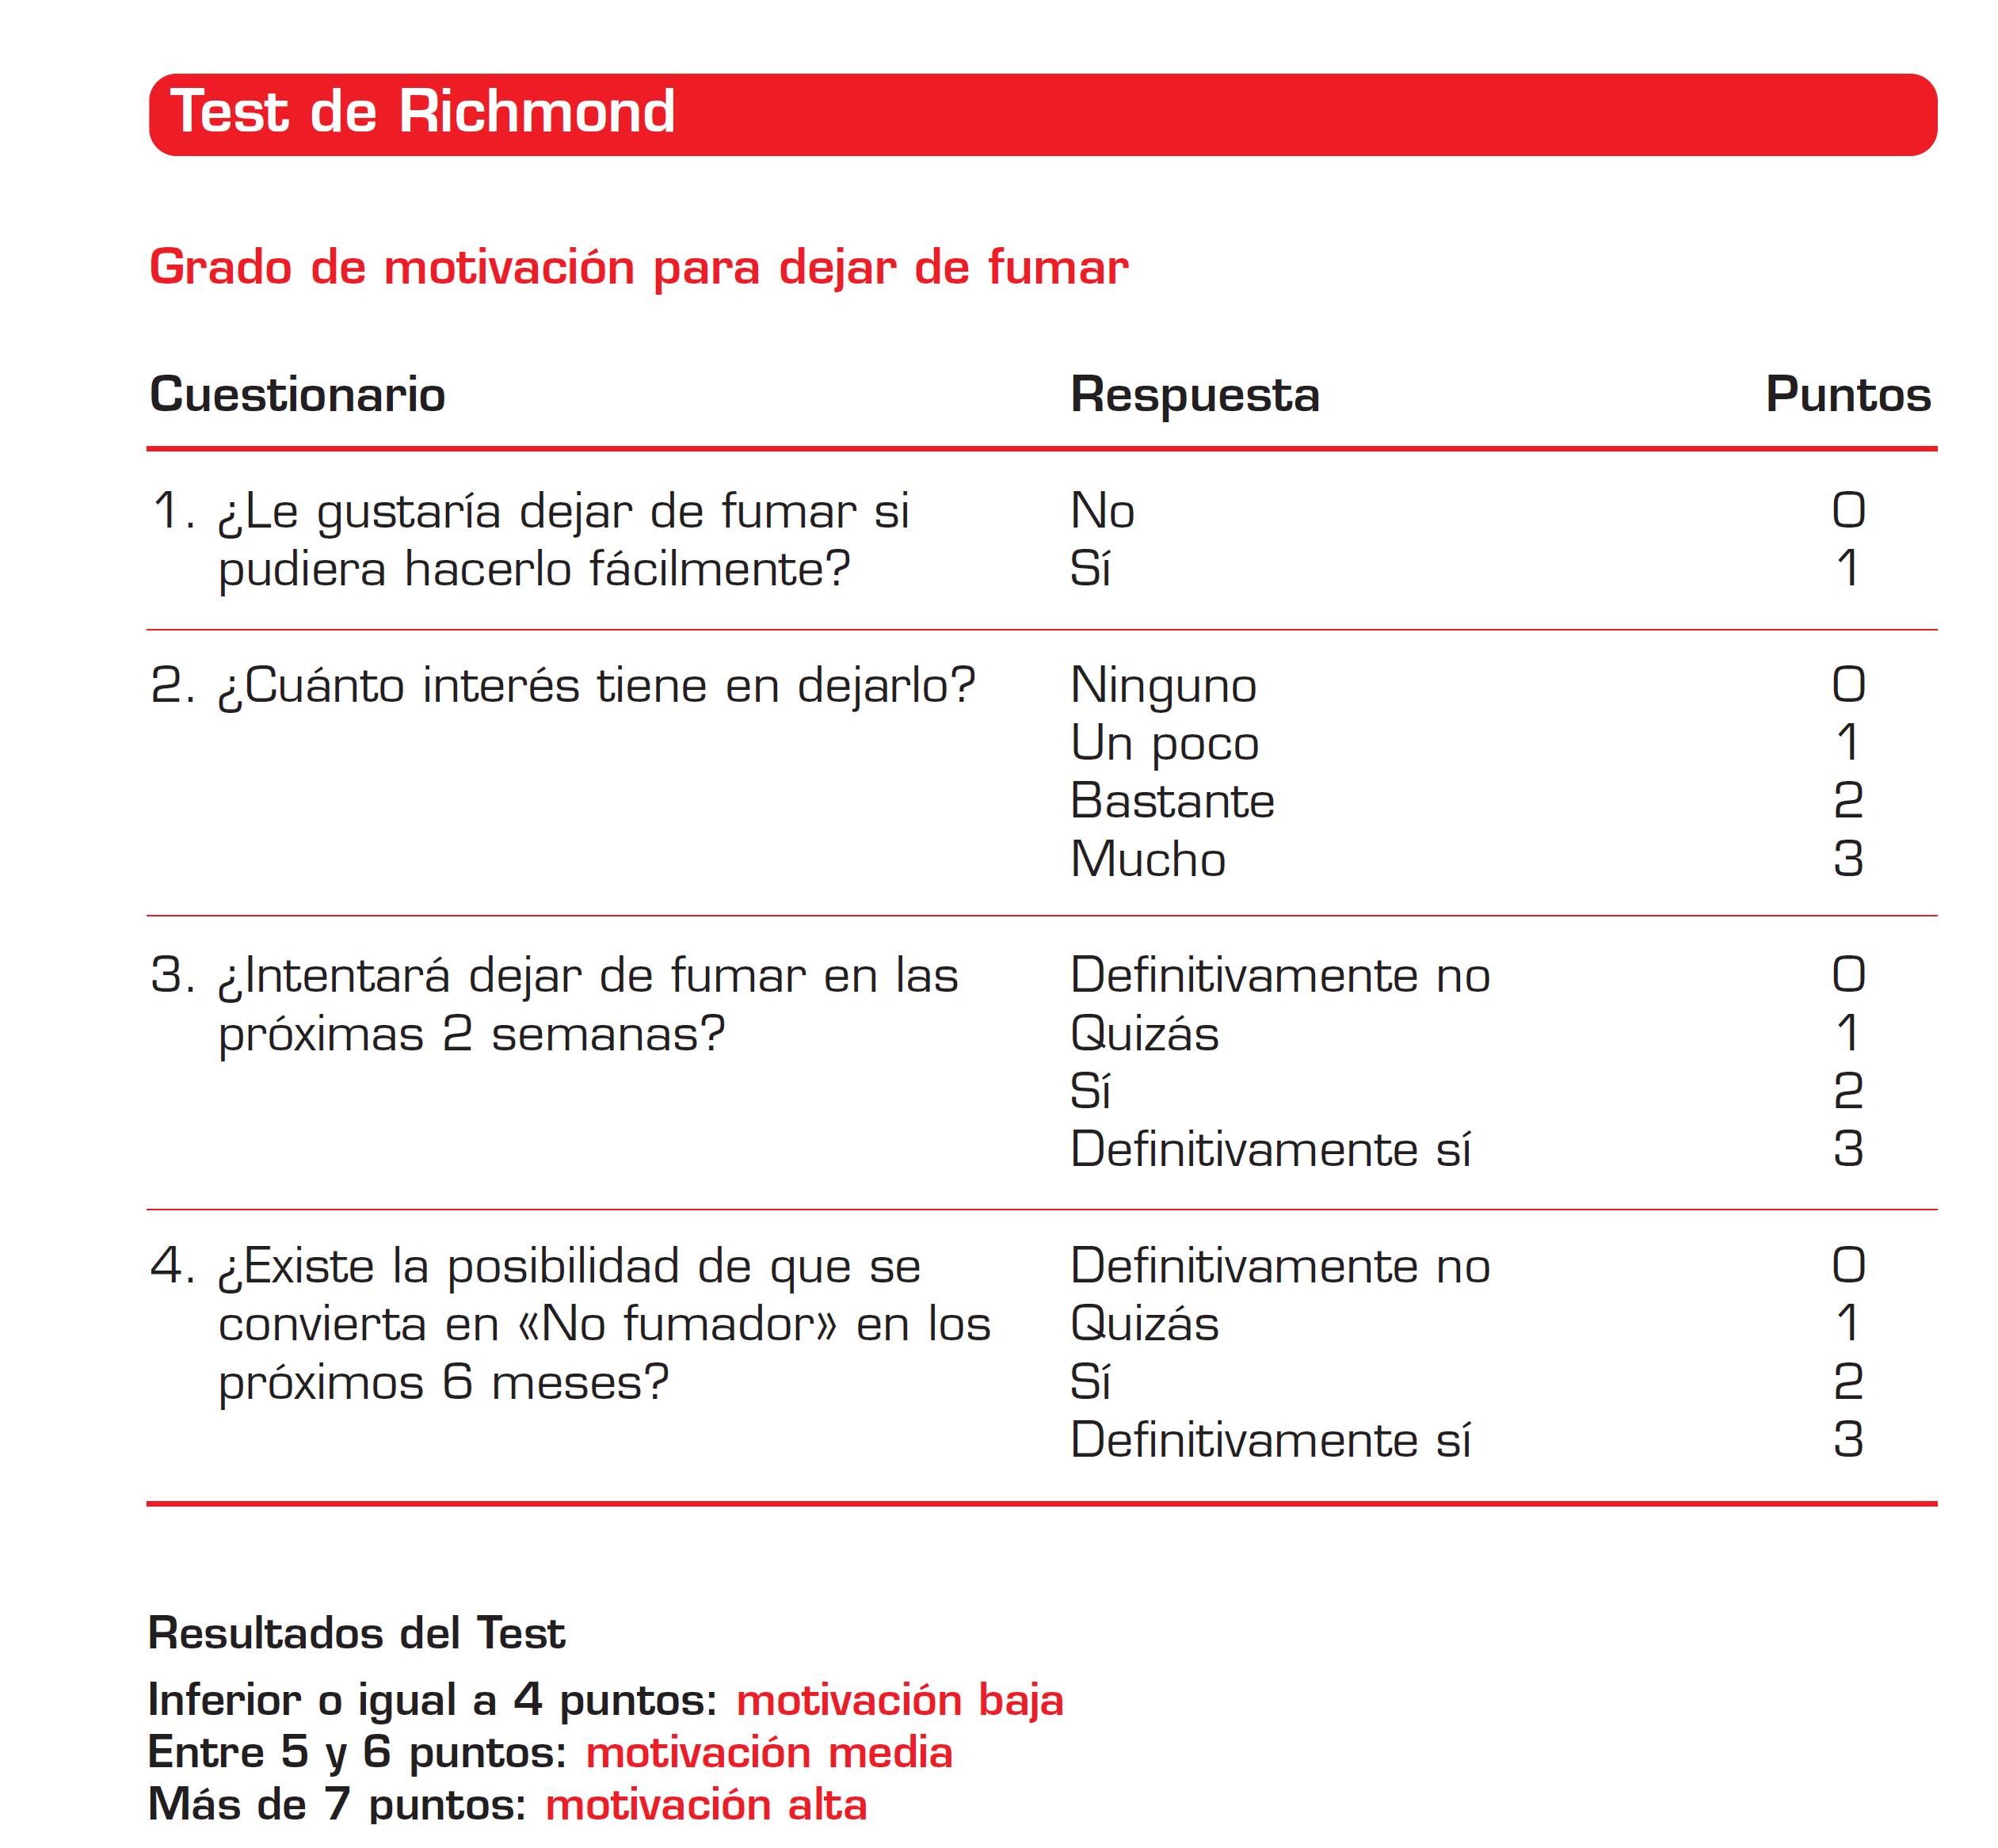 test-de-richmond-farmacia-dr-burguete